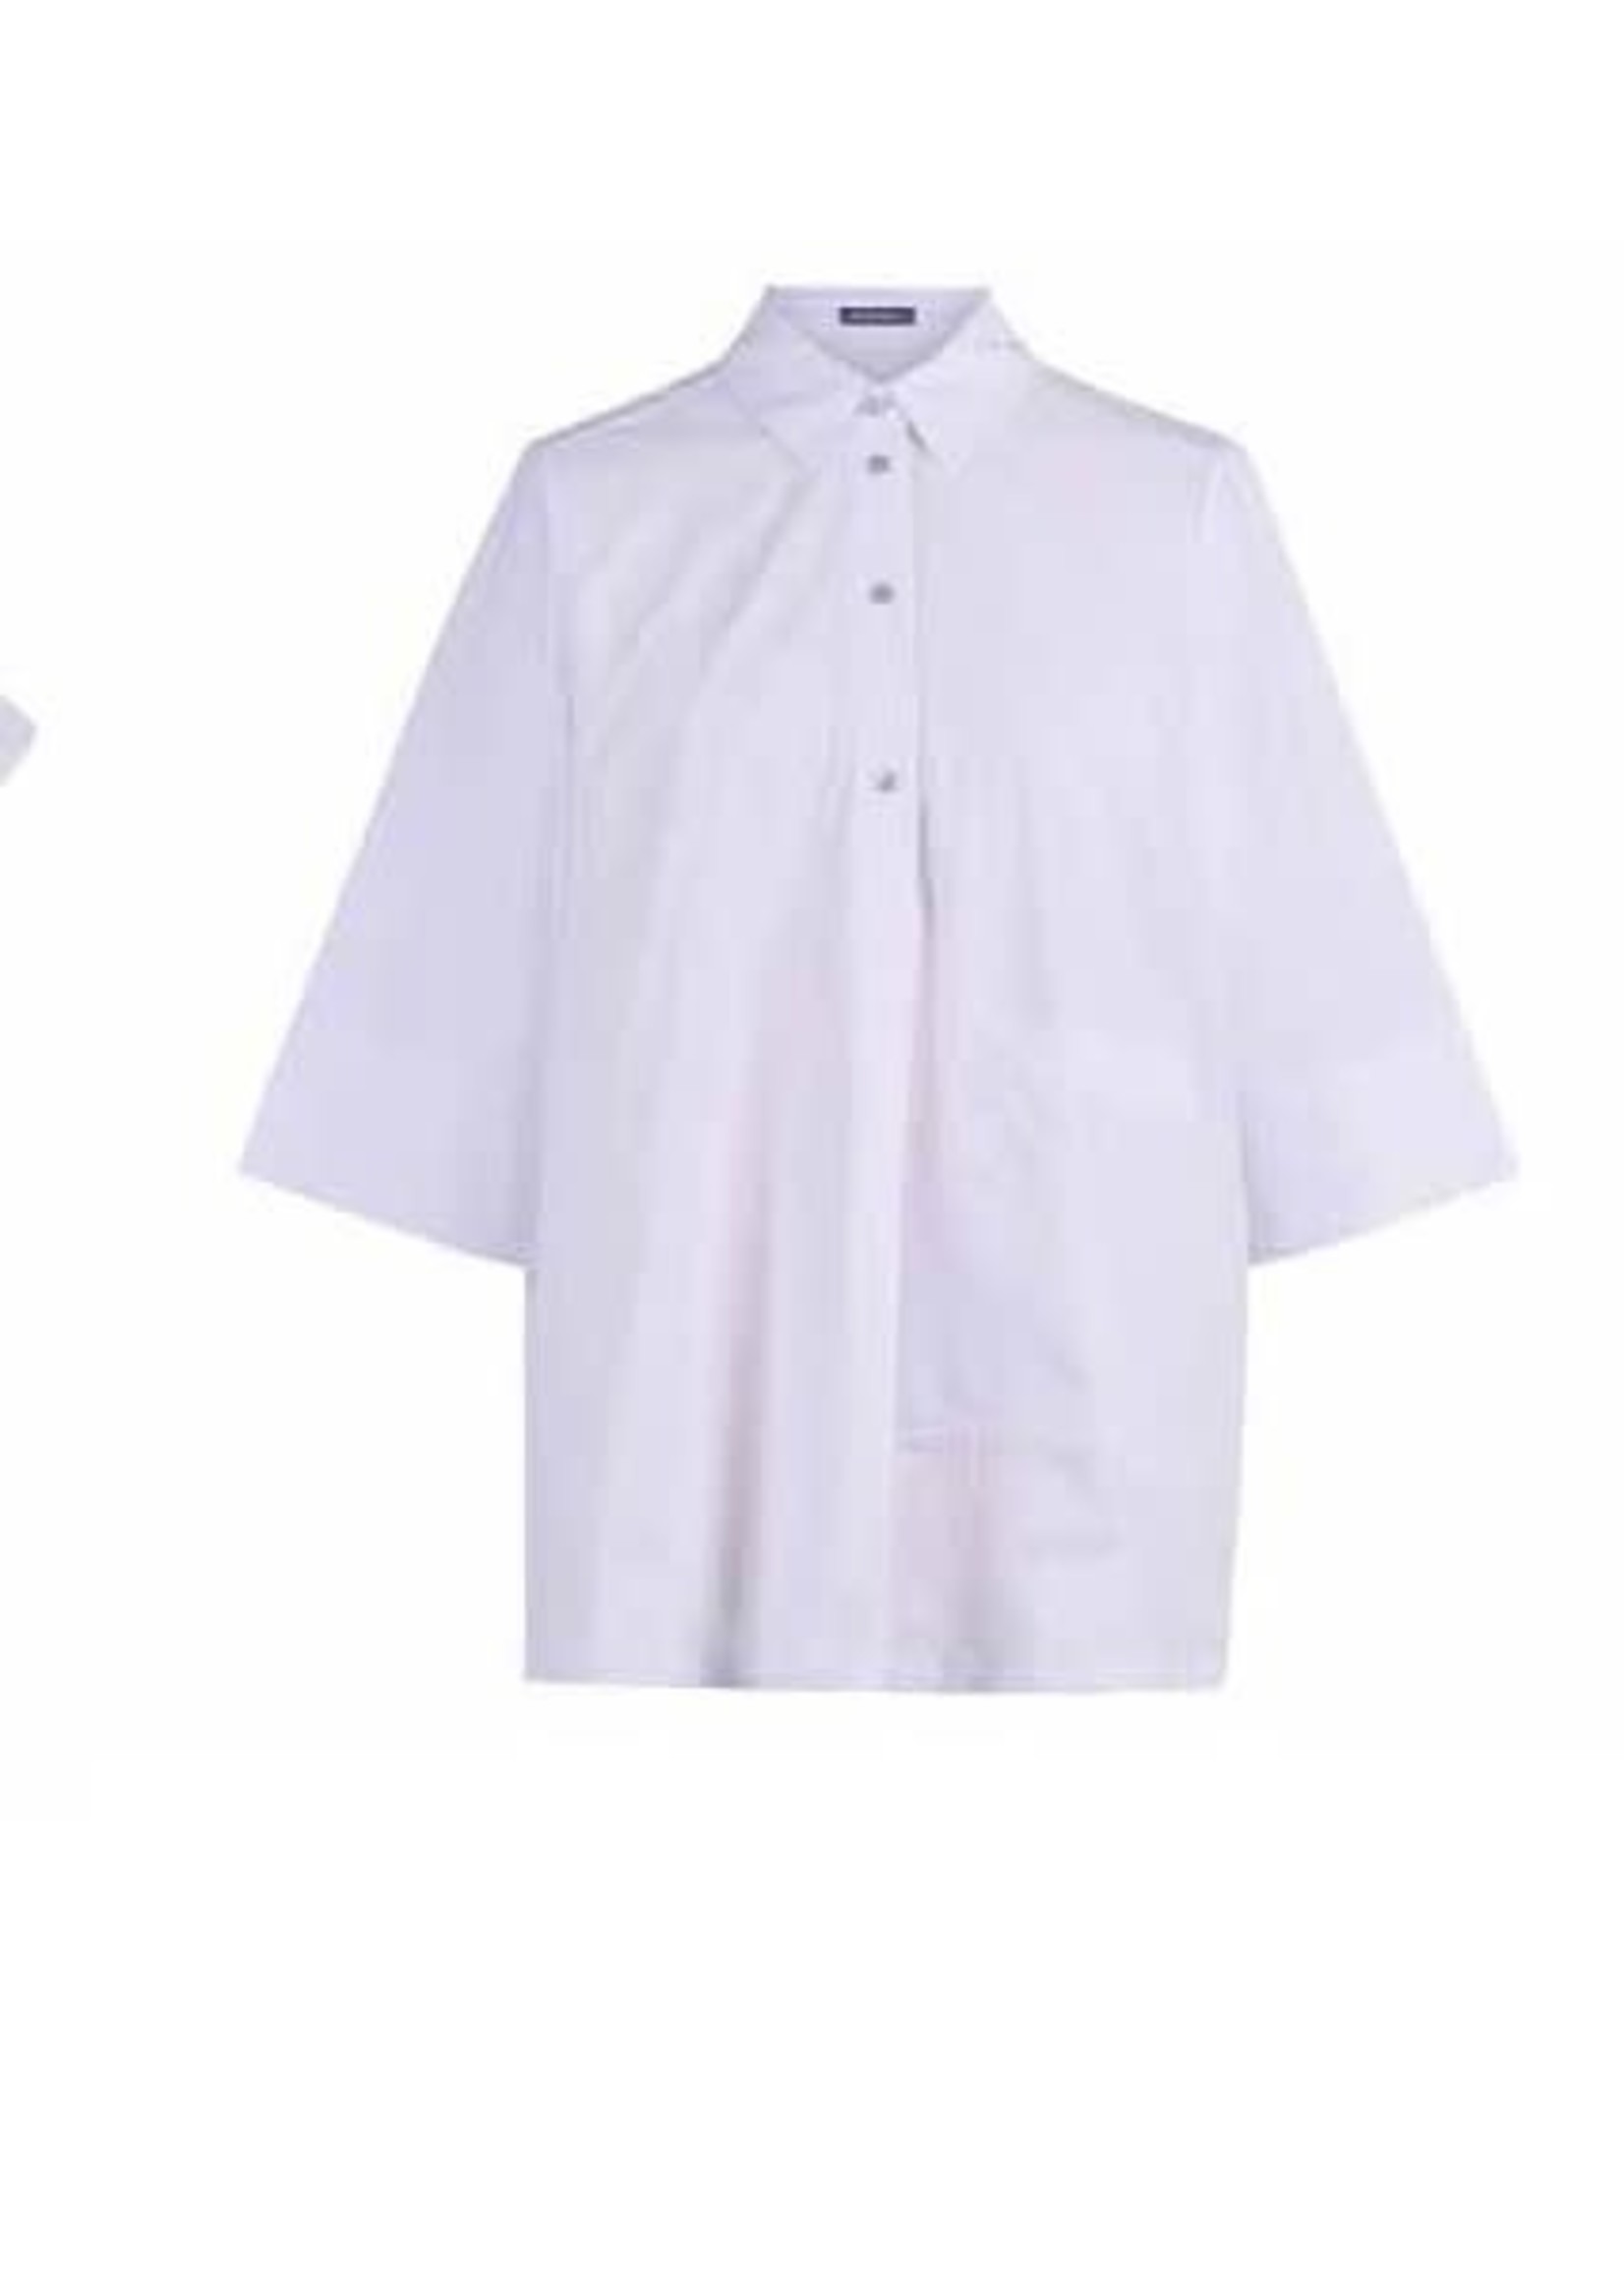 ALEMBIKA St220w white cotton collared shirt